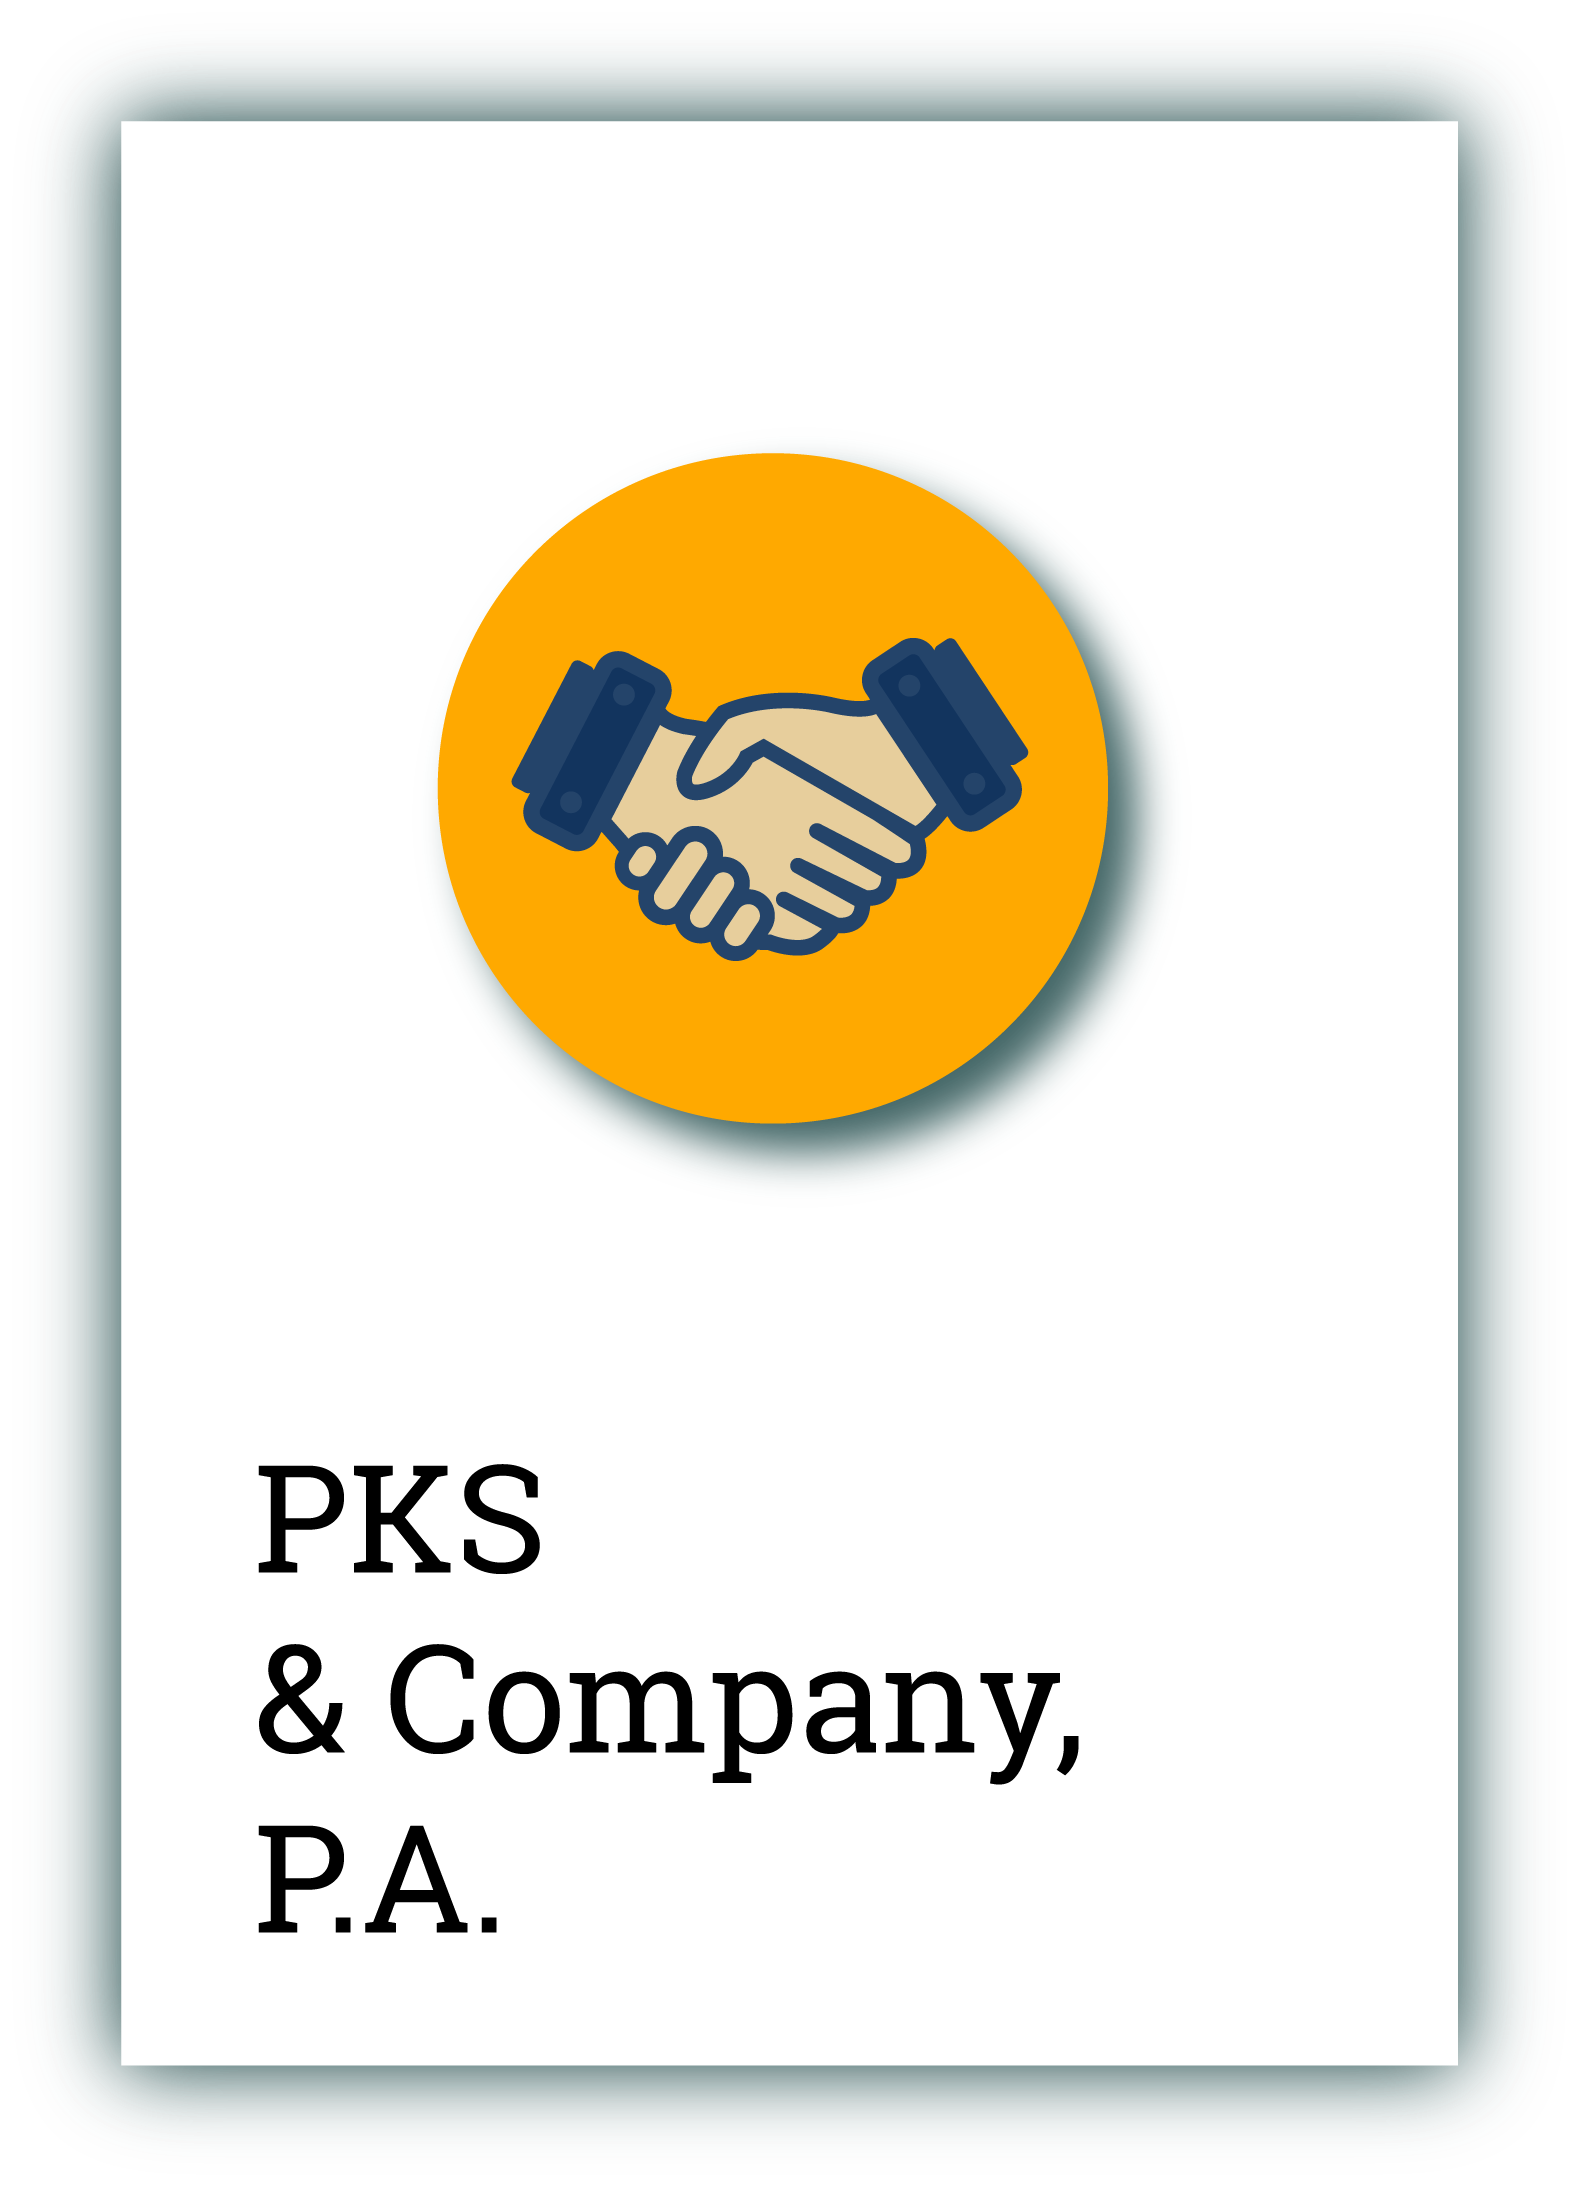 PKS & Company, P.A.